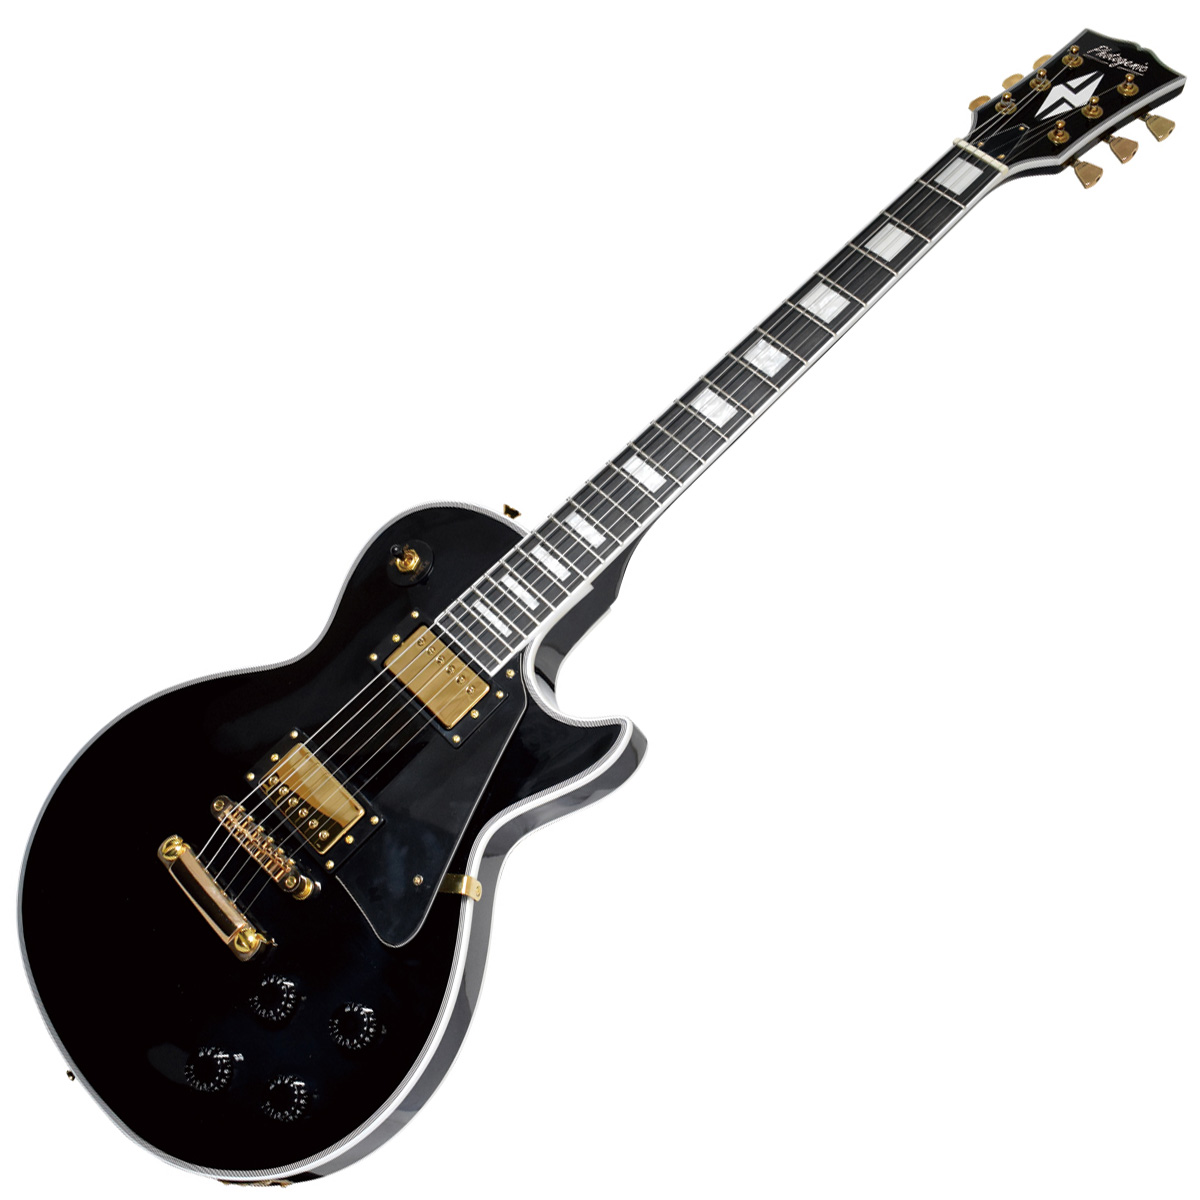 Photogenic LP-300C BK エレキギター レスポールカスタム ブラック 黒 フォトジェニック